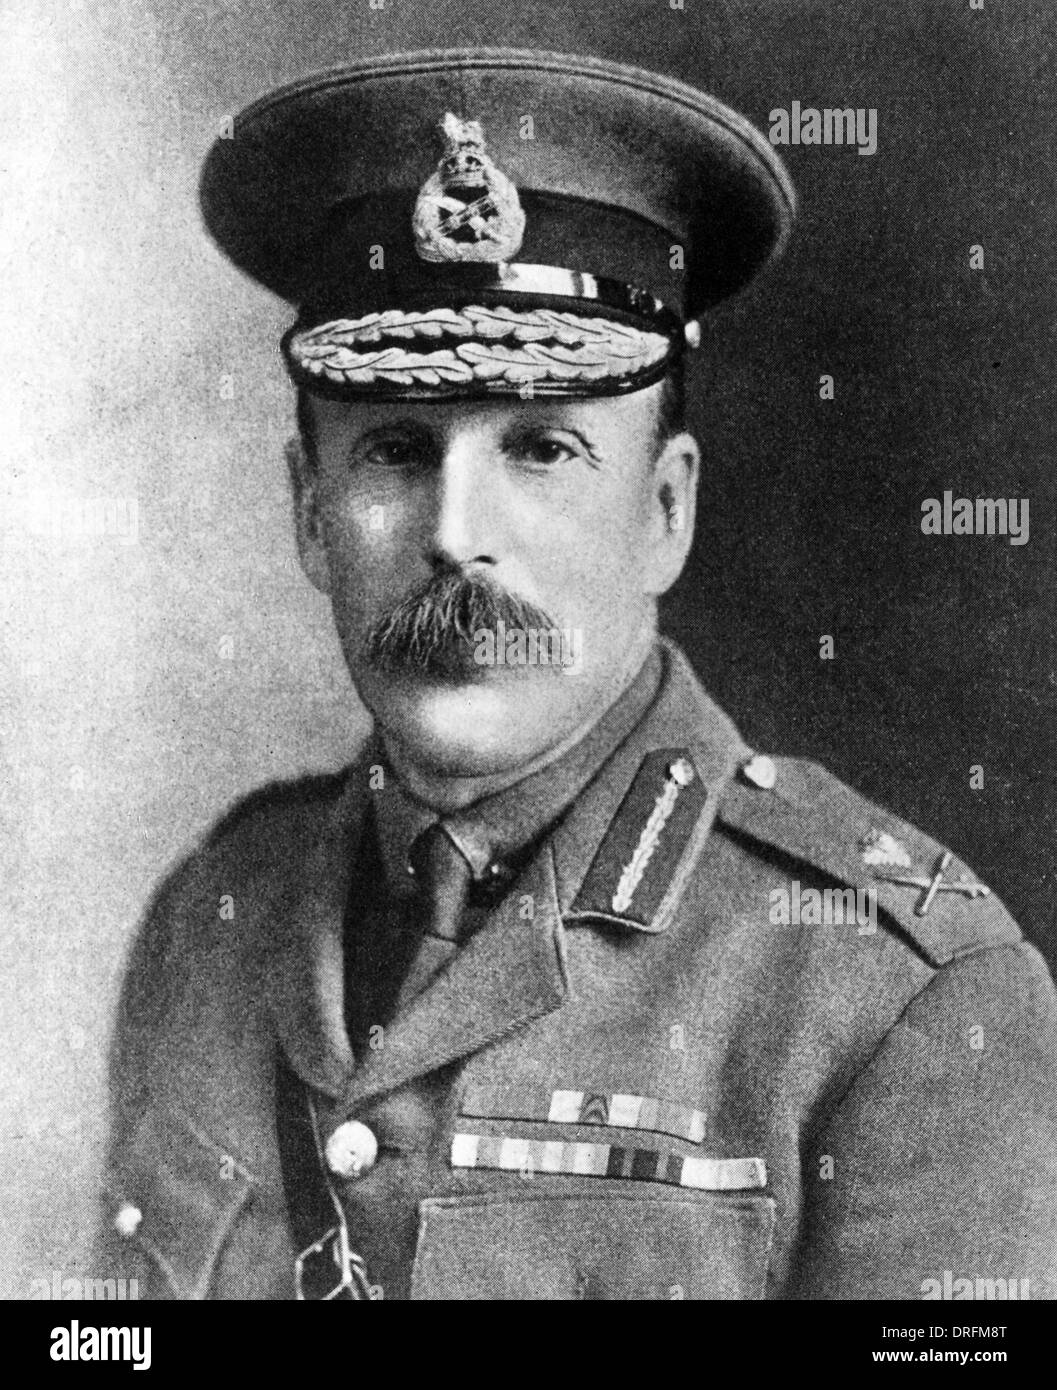 Sir Frederick Stanley Maude, officier de l'armée britannique, WW1 Banque D'Images